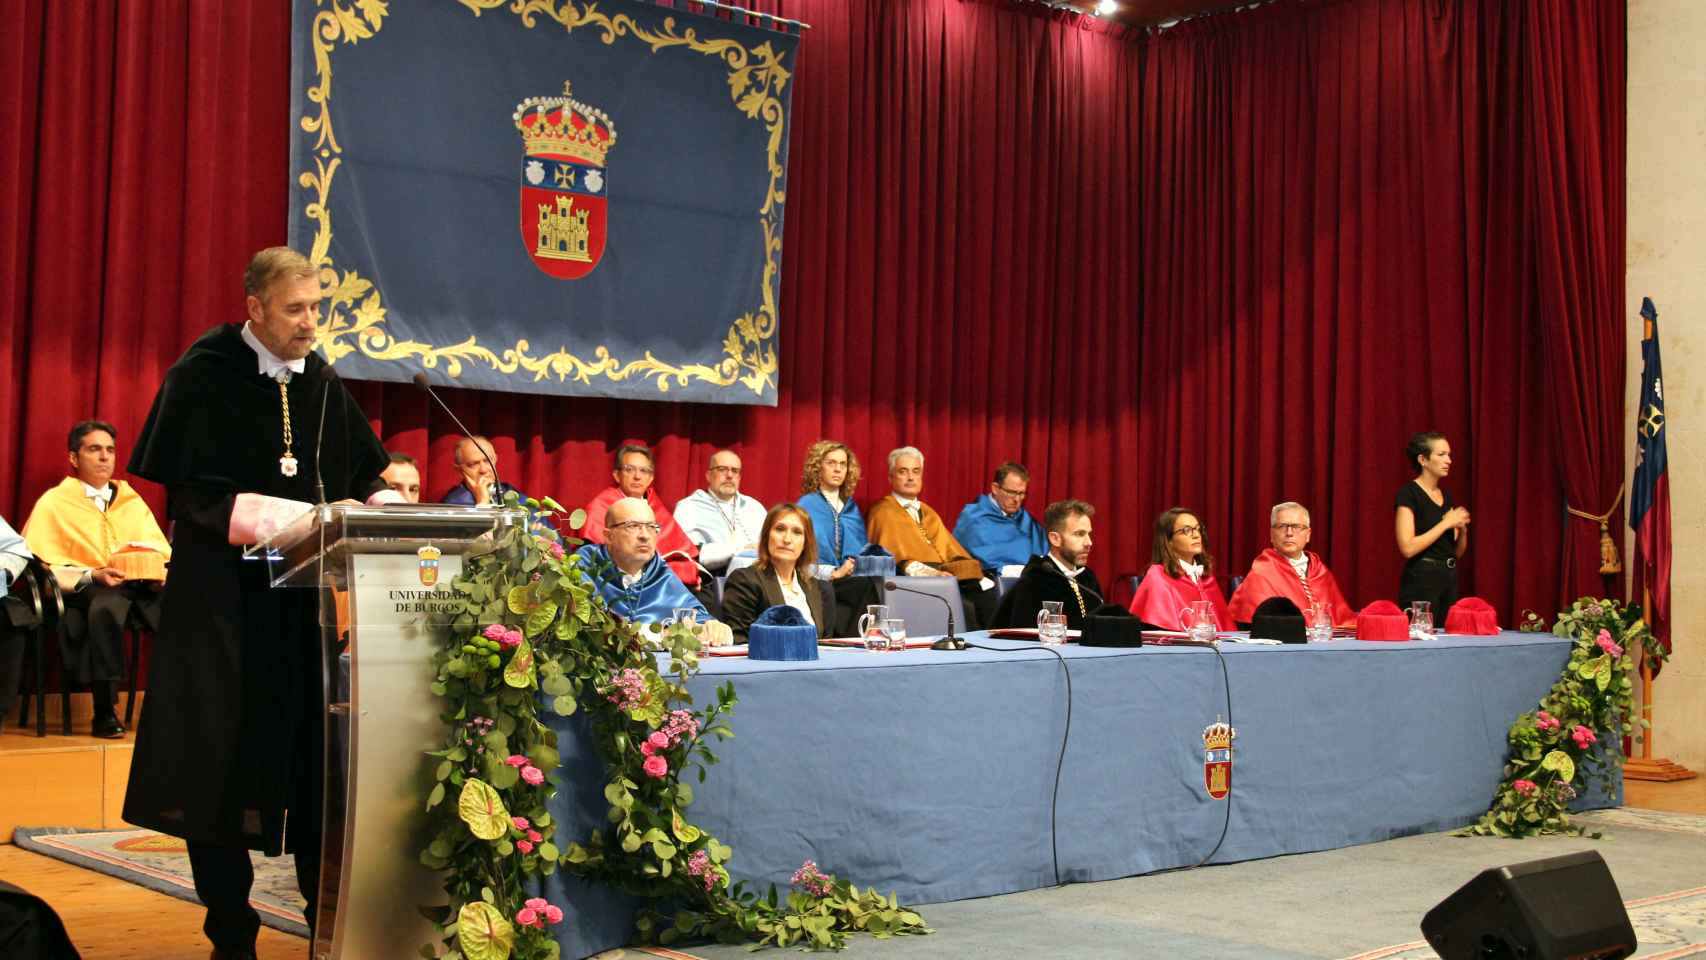 Acto de apertura del curso 22/23 en la Universidad de Burgos